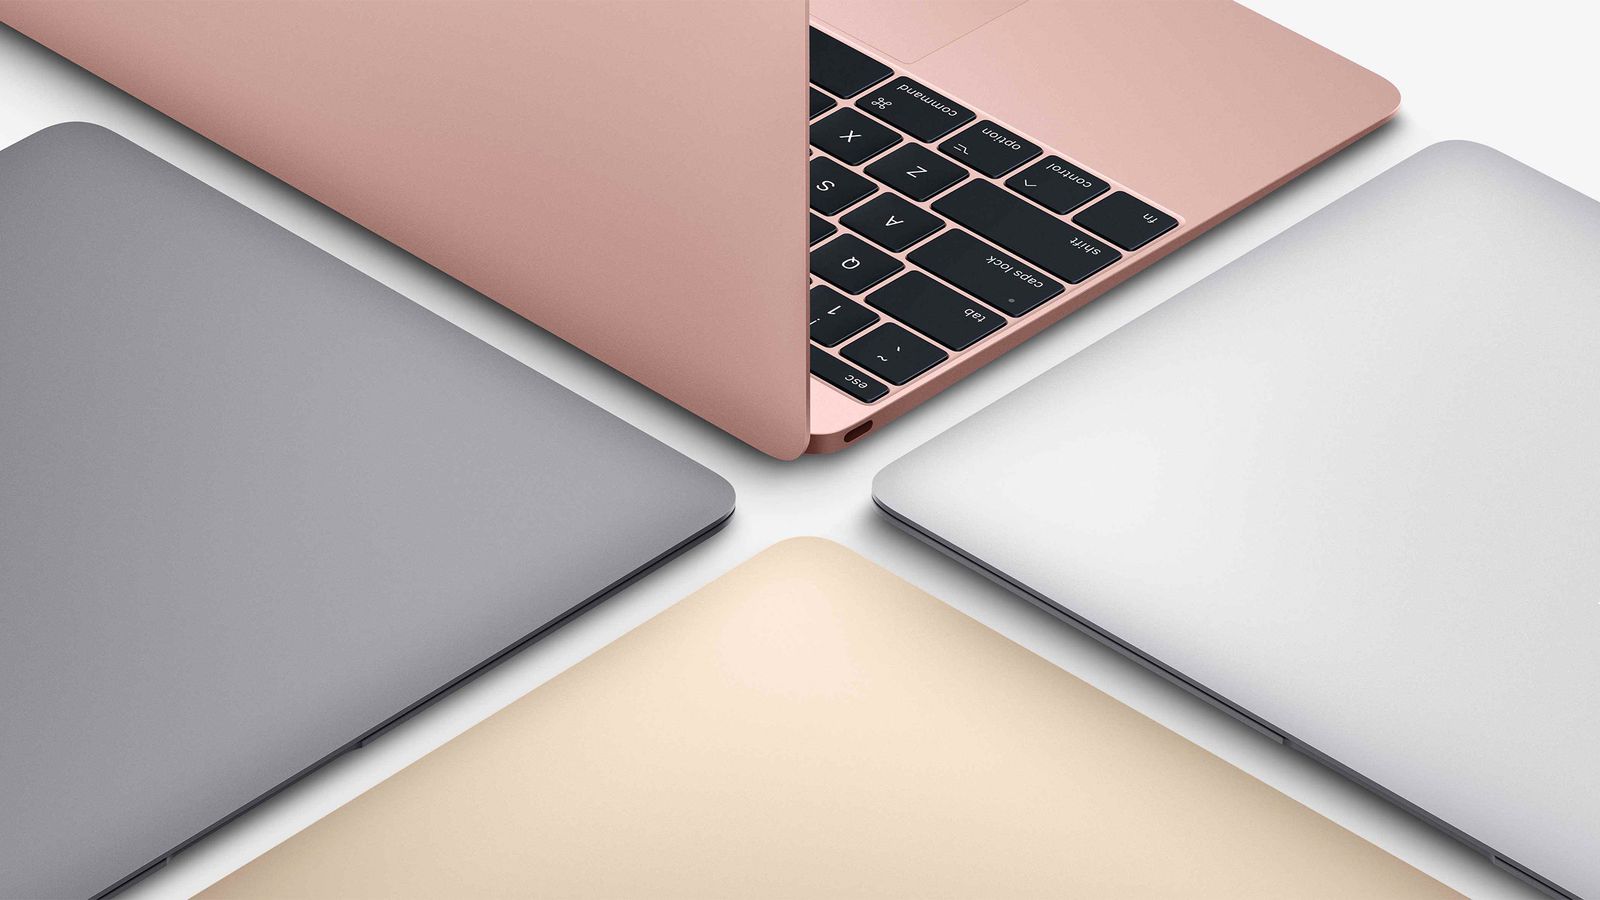 Возможно Apple не разрабатывает 12-дюймовый MacBook